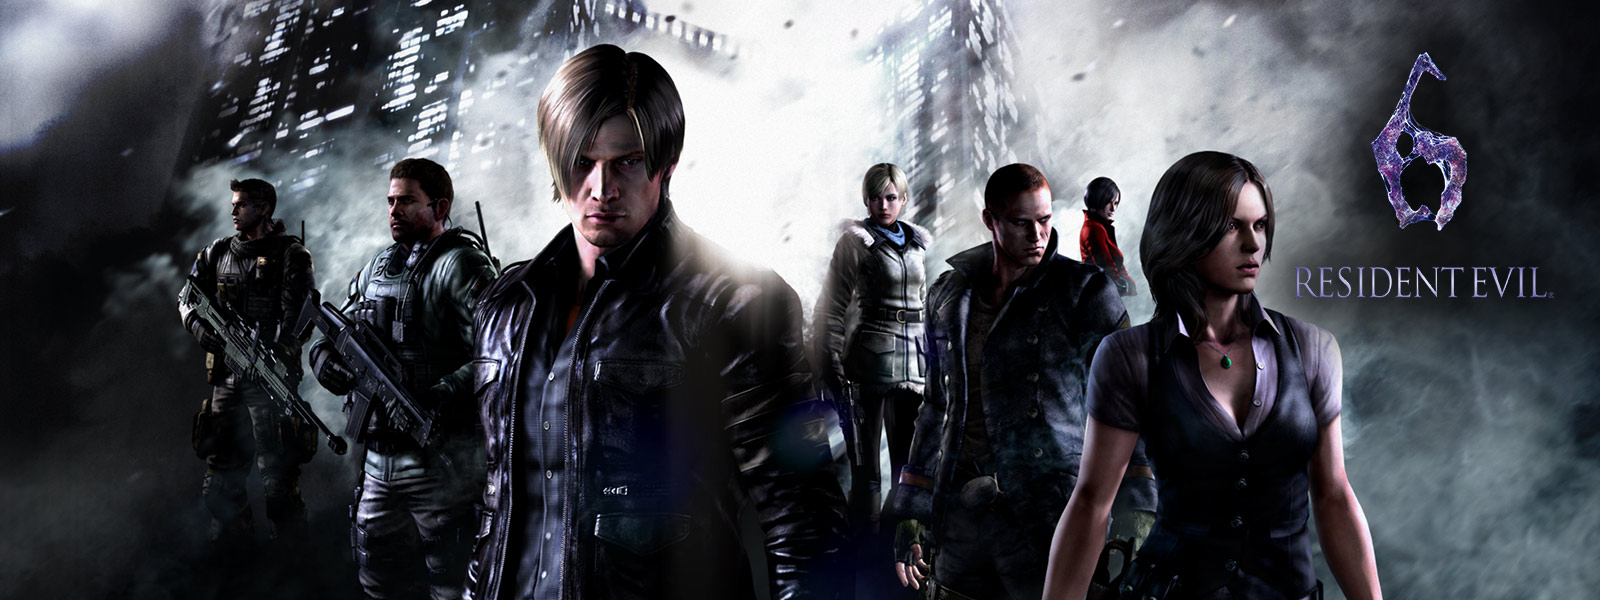 Resident Evil 6, tutti i personaggi di Resident Evil in piedi davanti a grattacieli dall'aspetto minaccioso